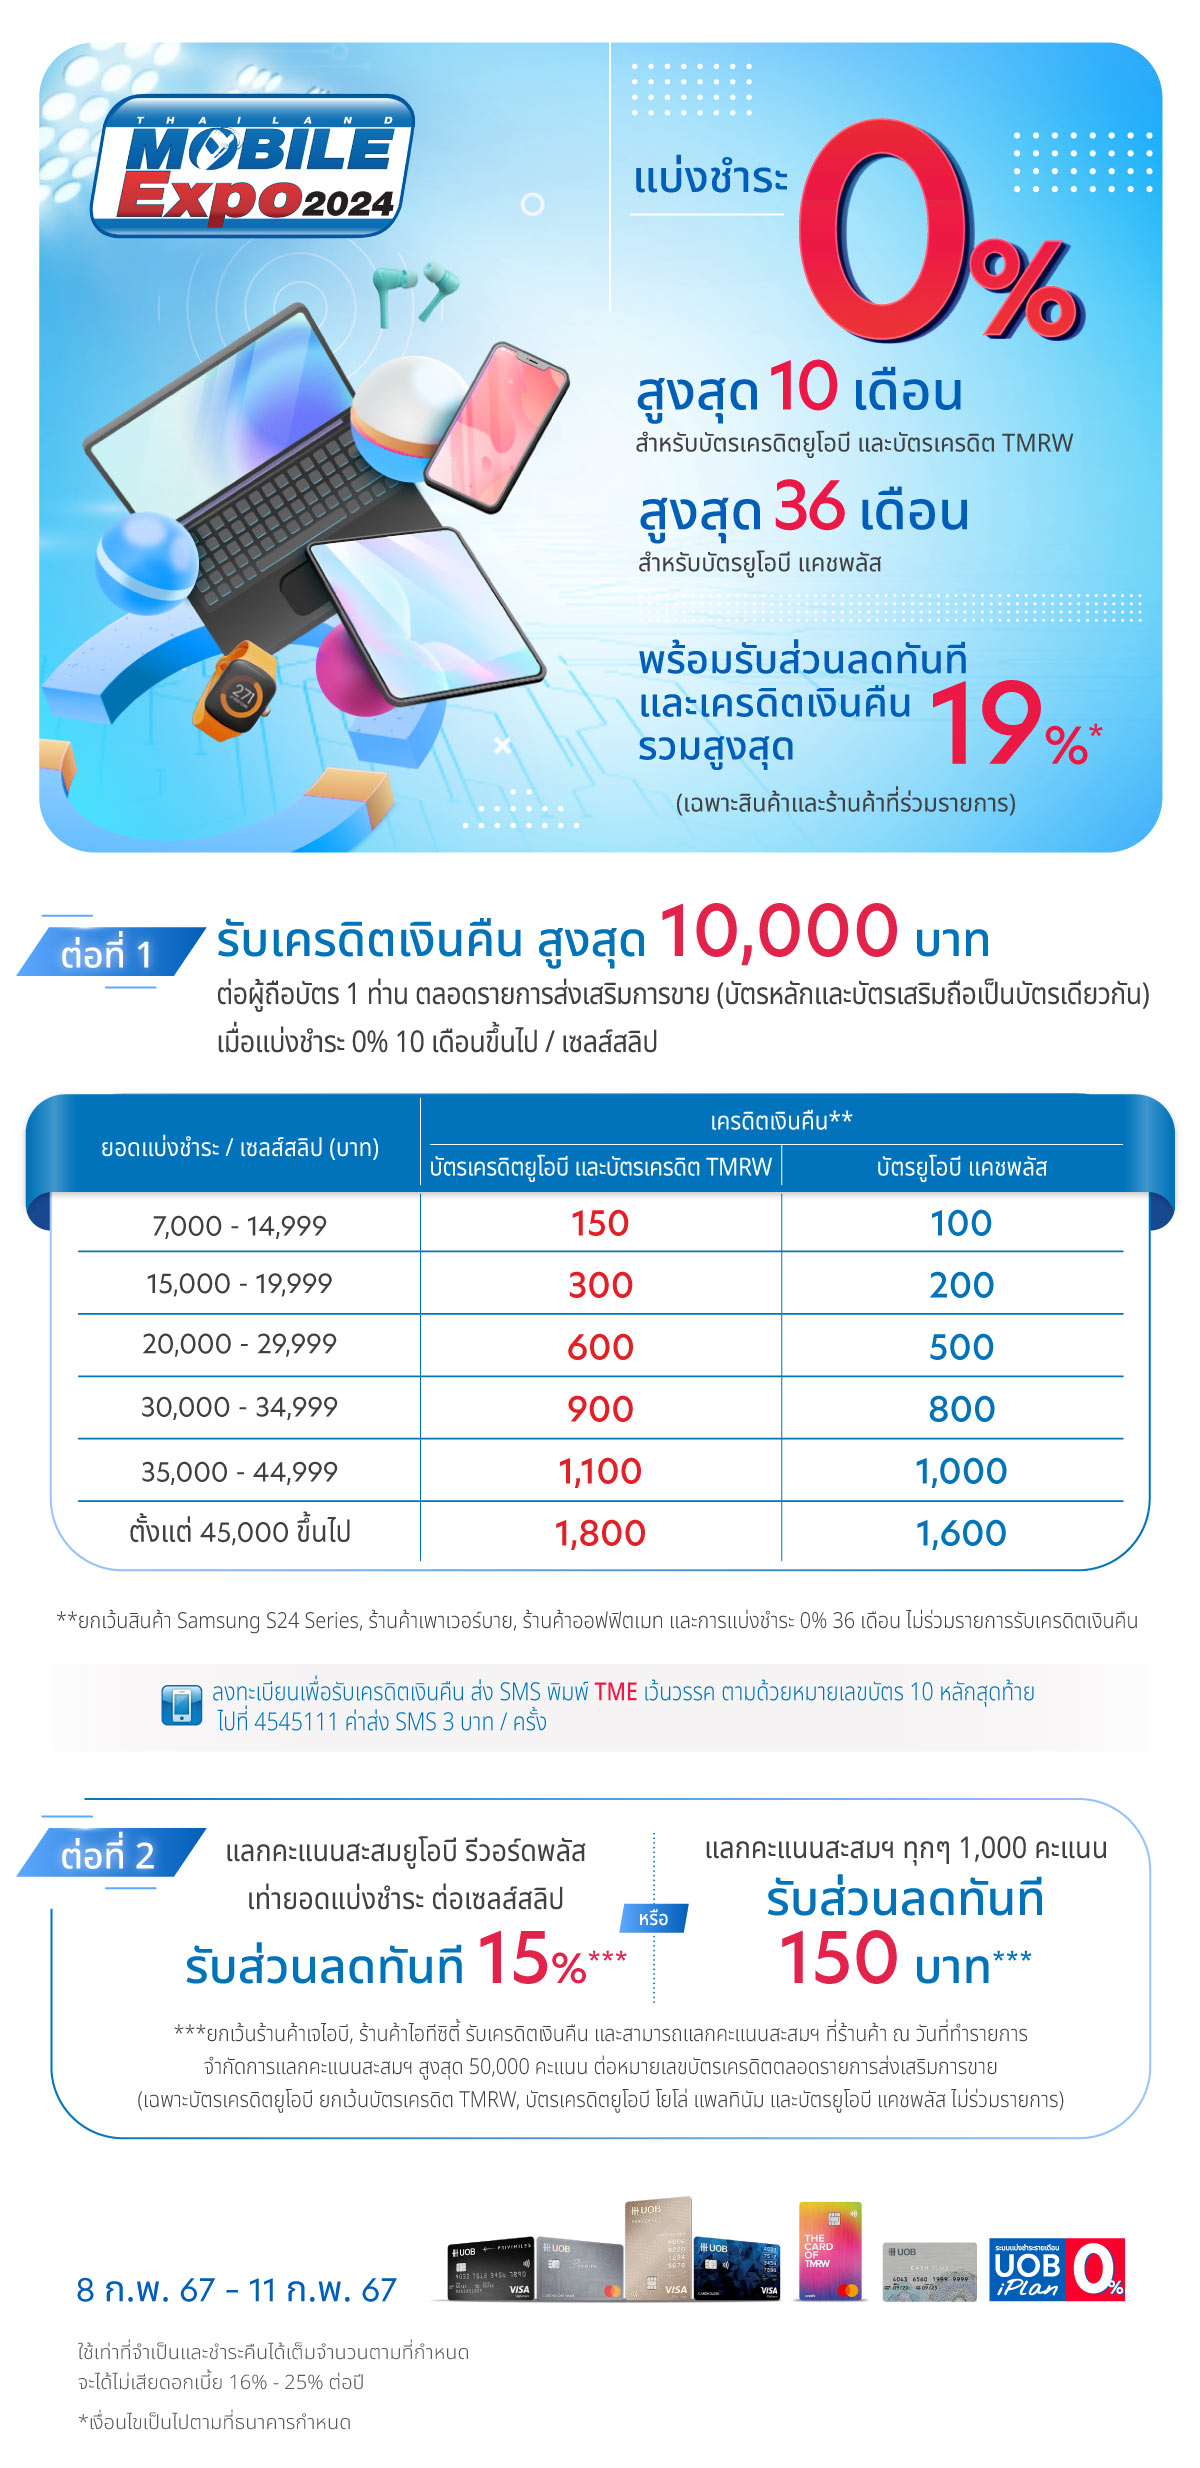 โปรโมชั่นบัตร UOB แบ่งชำระ 0% ที่งาน Thailand Mobile Expo